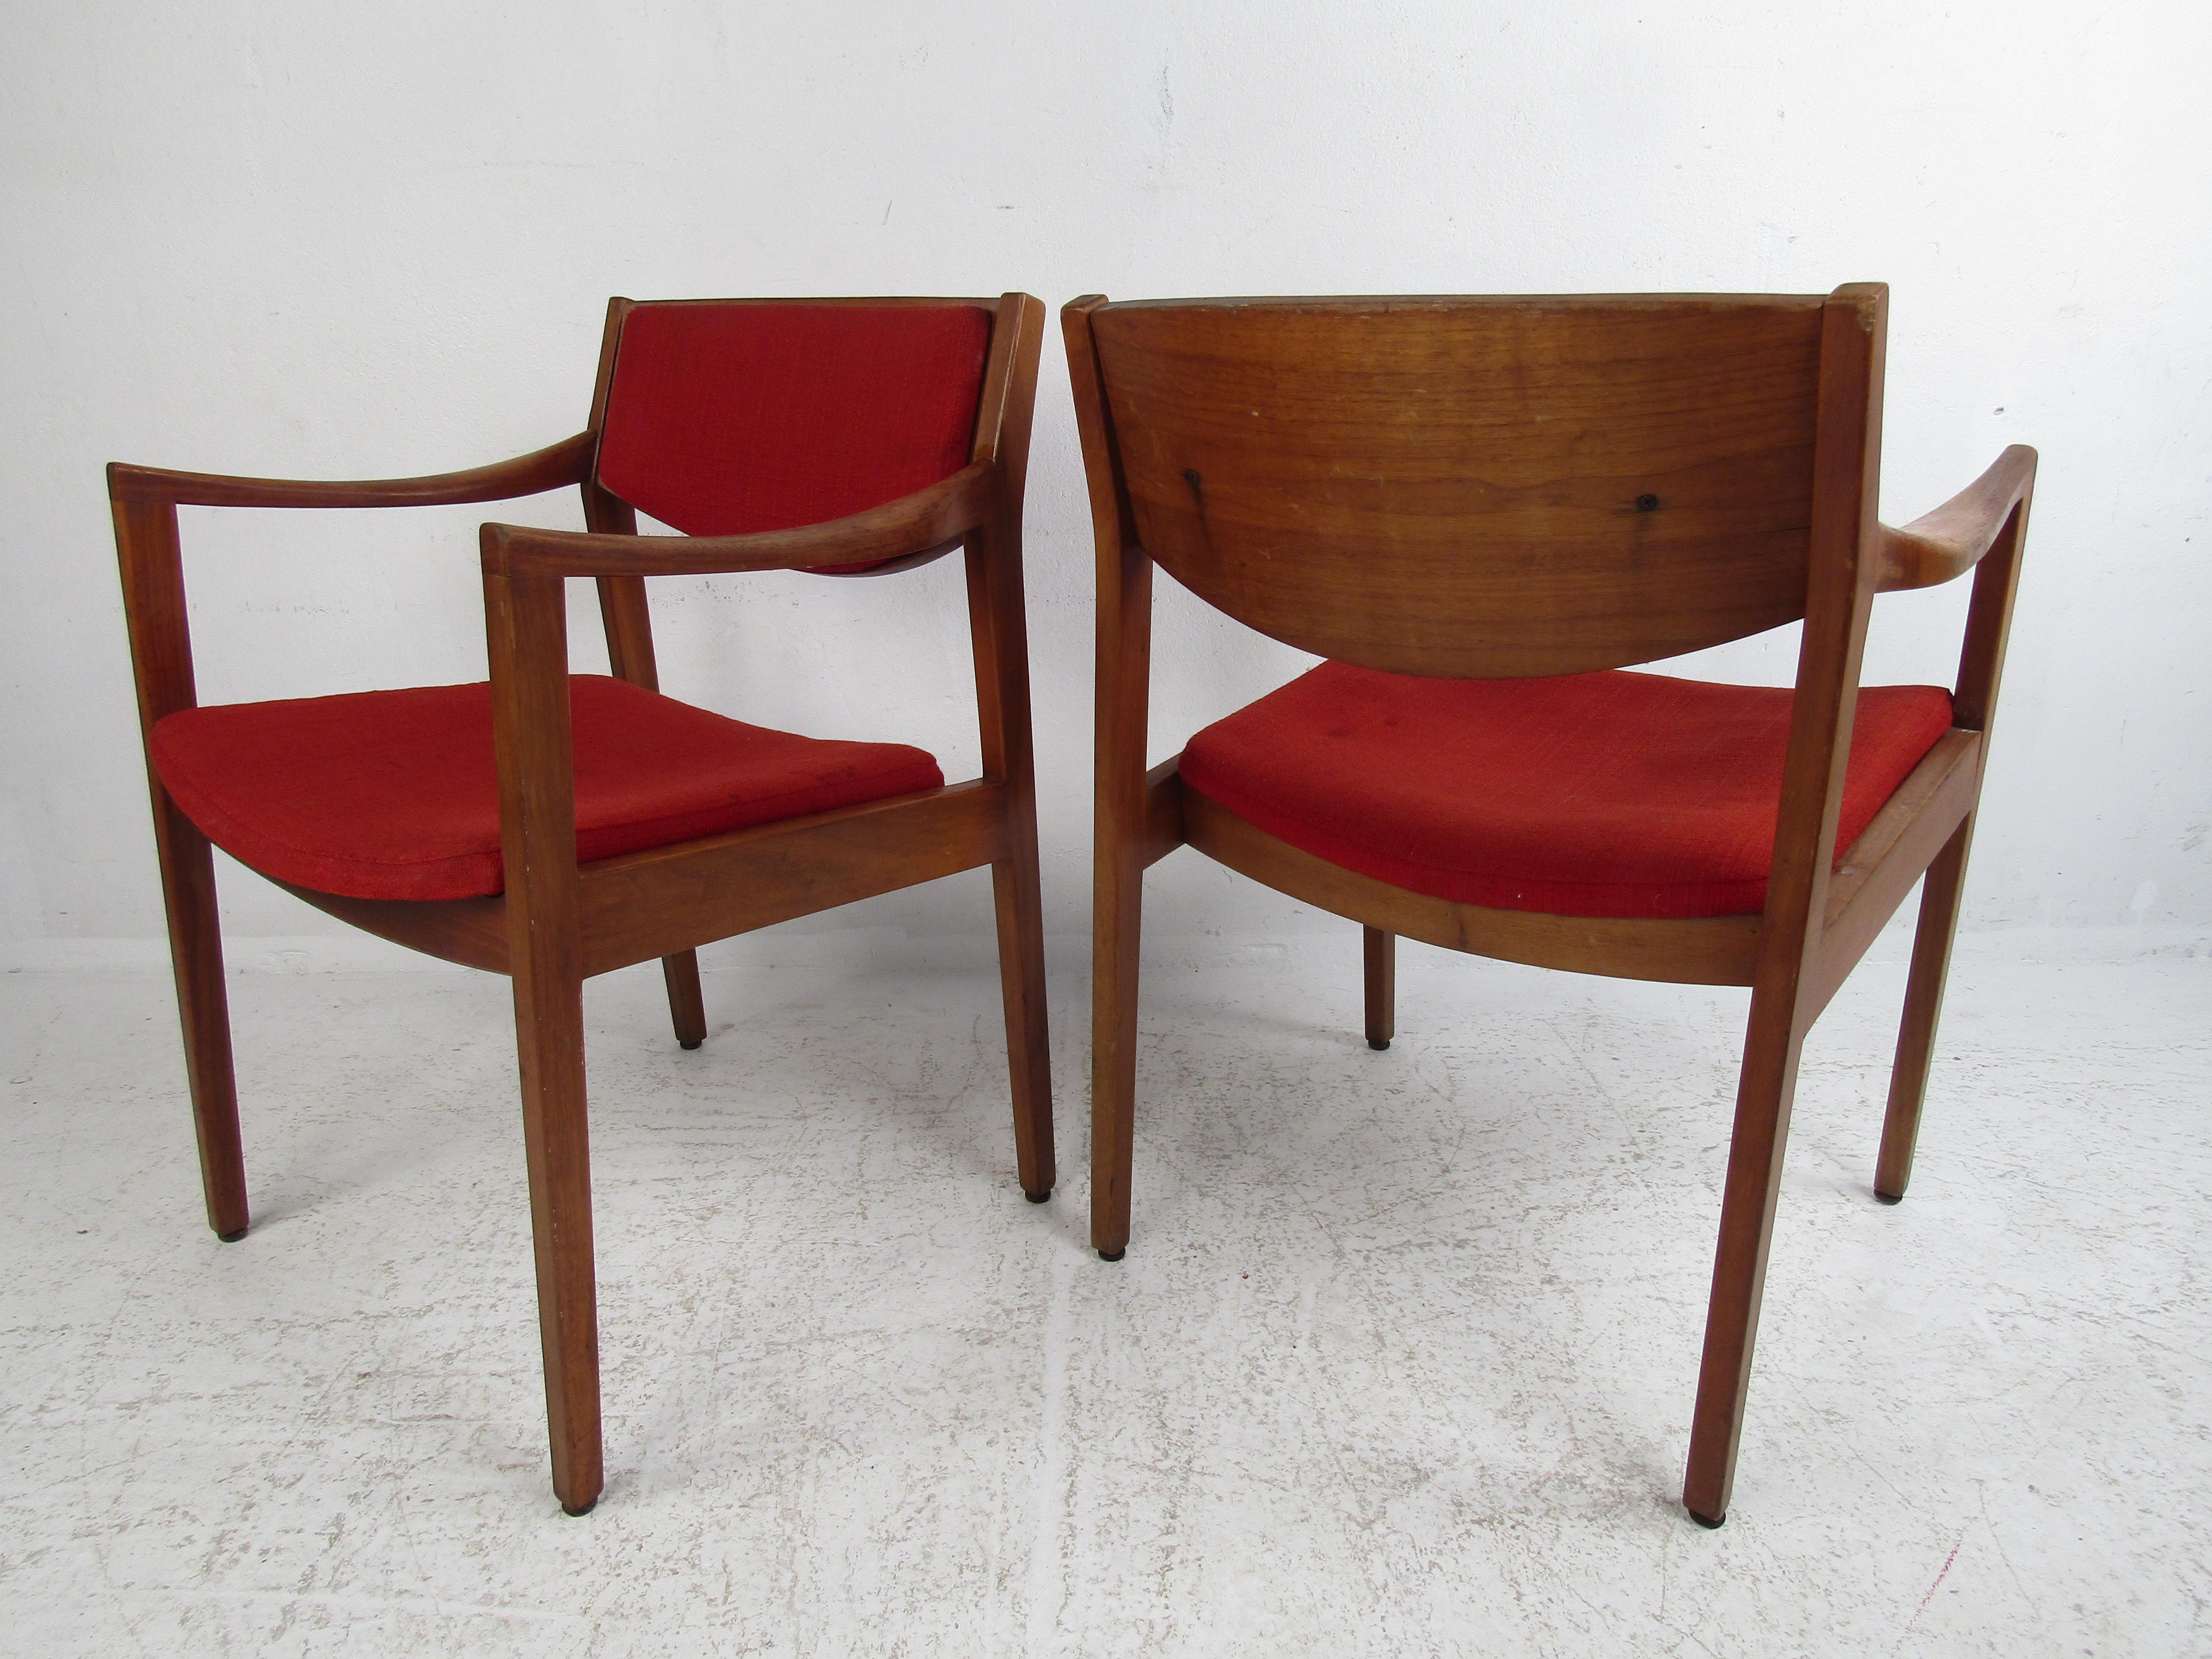 Dieses atemberaubende Paar moderner Sessel im Vintage-Stil hat ein Gestell aus dunklem Walnussholz mit geschwungenen Armlehnen und gepolsterten Rückenlehnen. Ein wunderbares Design, das für Komfort sorgt, ohne auf Stil zu verzichten. Dieses Paar